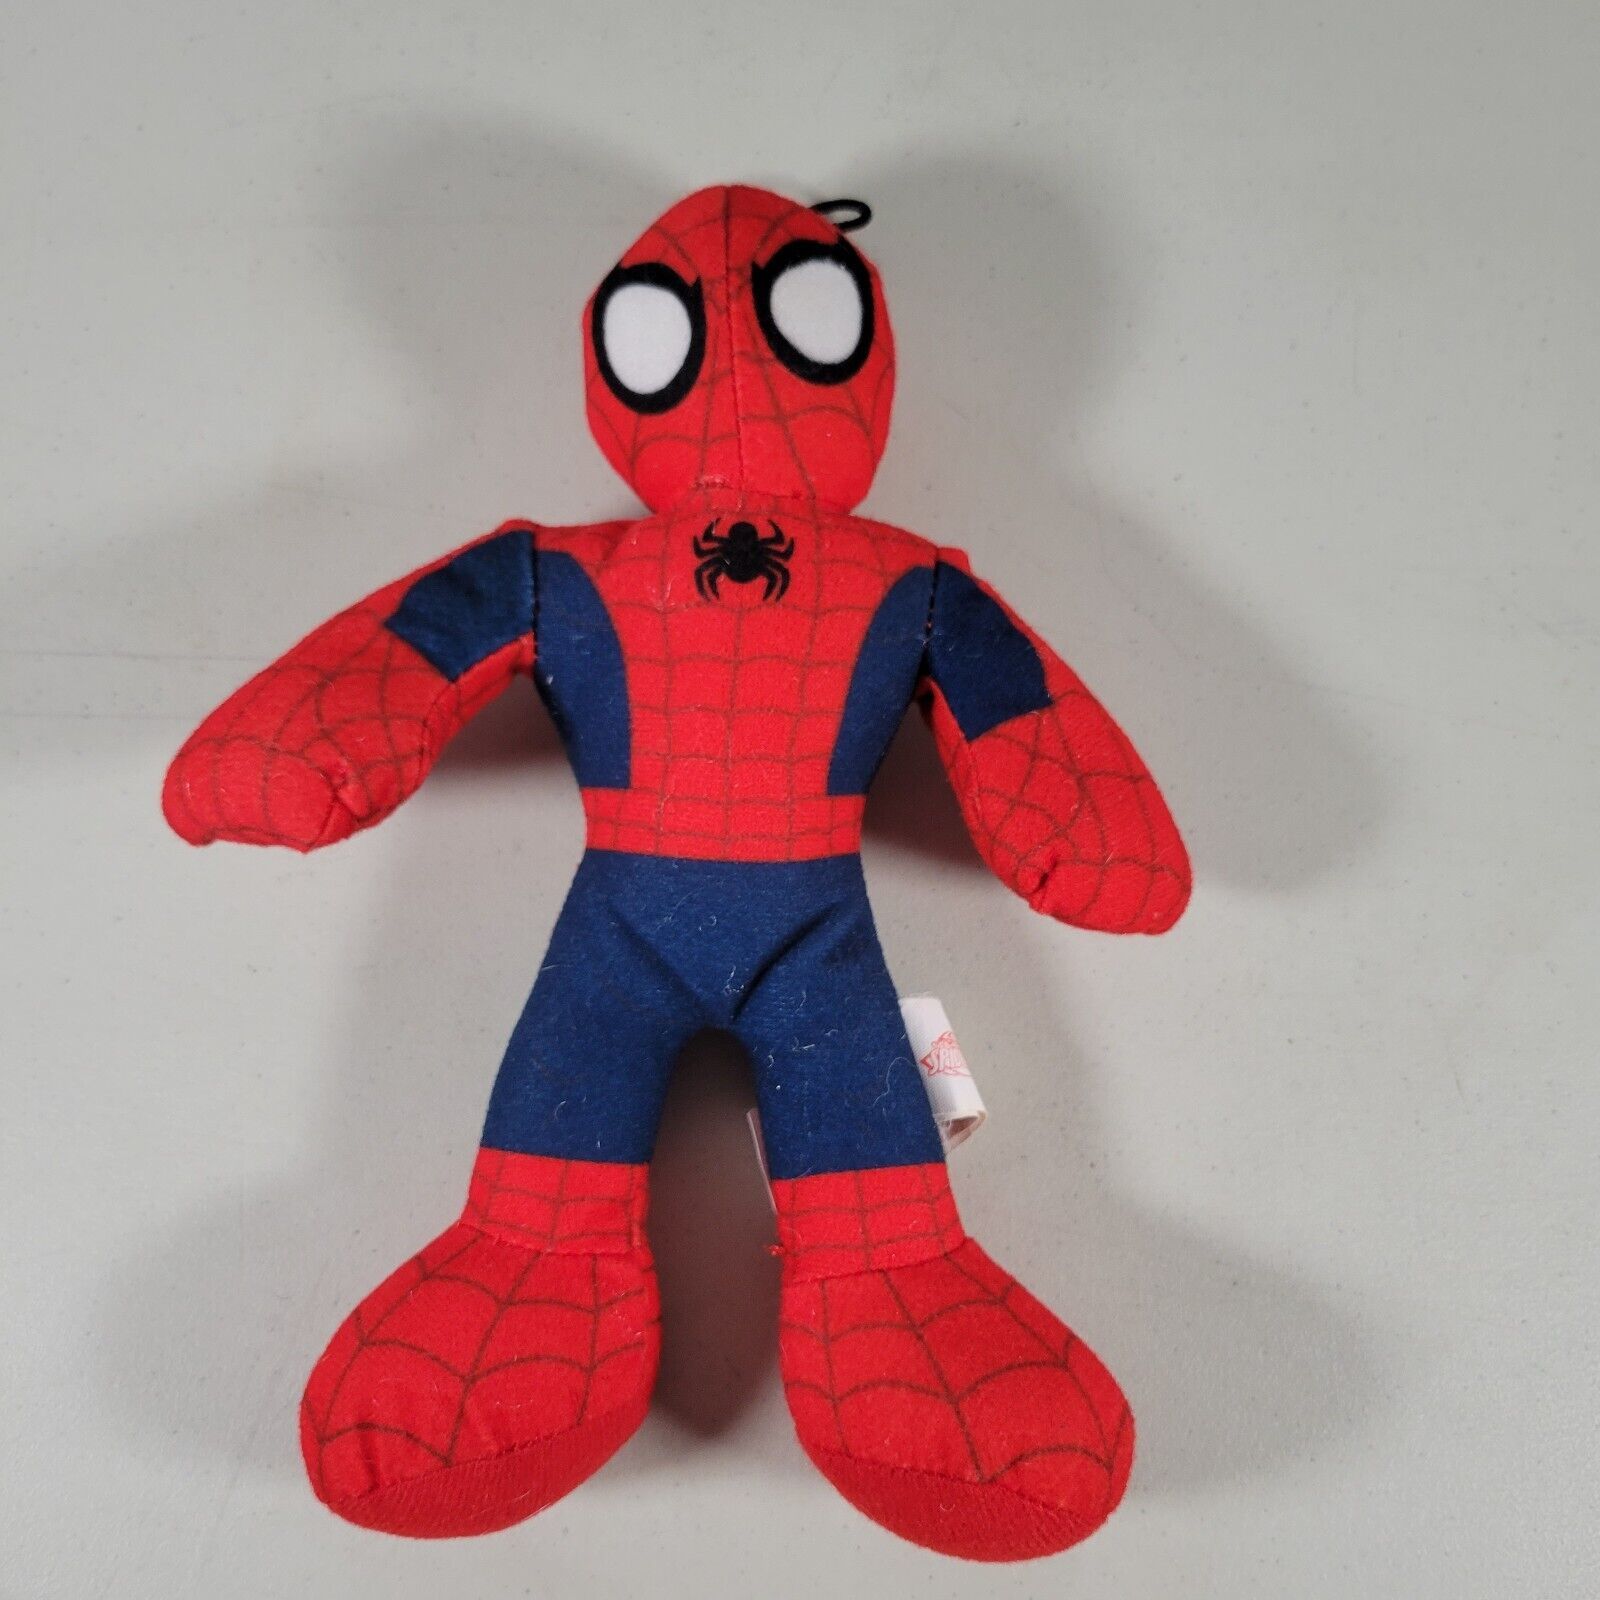 Mattel Marvel Spiderman Plush Stuffed Toy Spiderman Size 9” Tall - £7.20 GBP